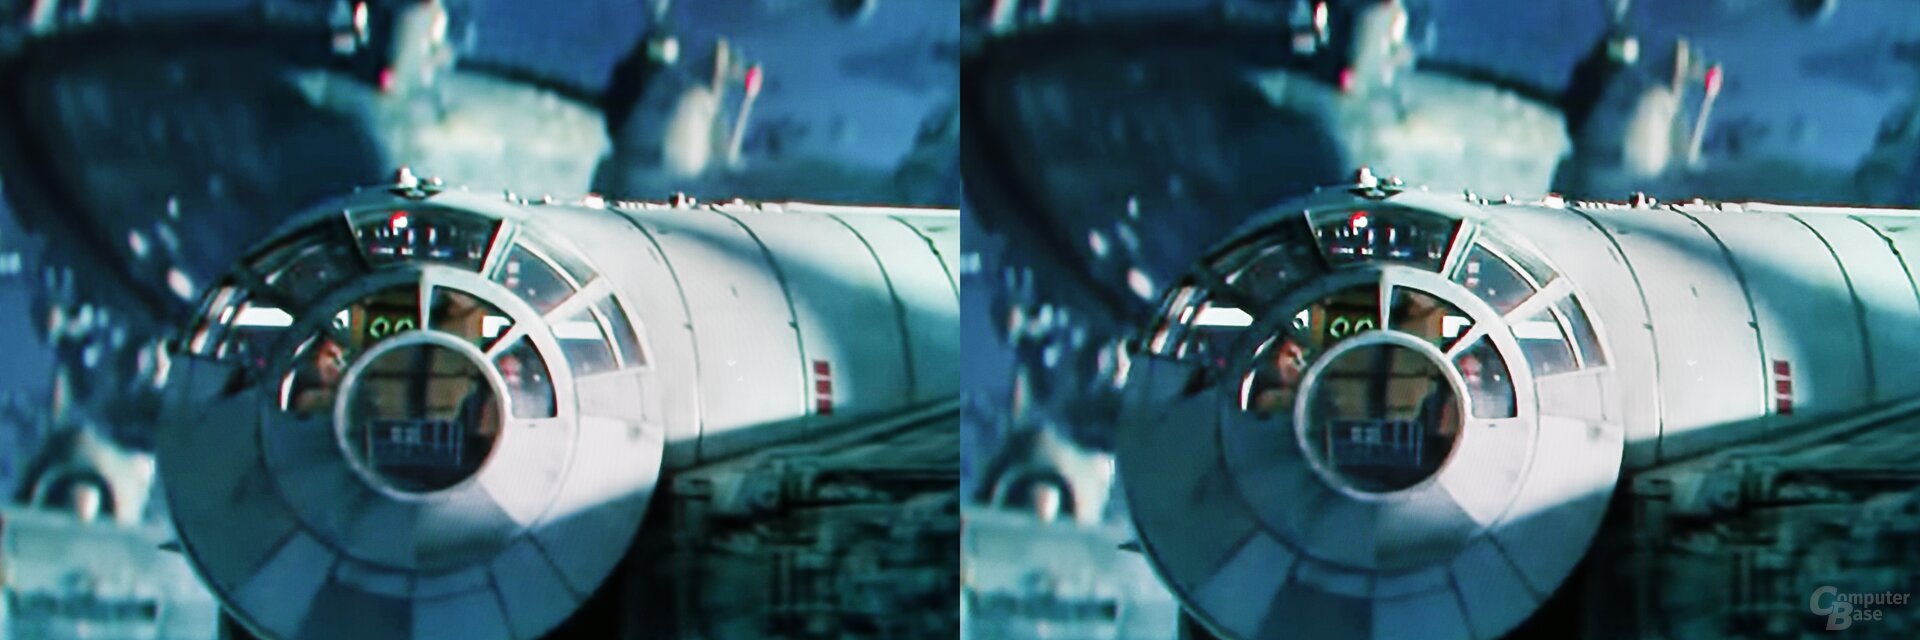 Szene aus Star Wars IX Trailer: links Standard, rechts KI-Upscaling